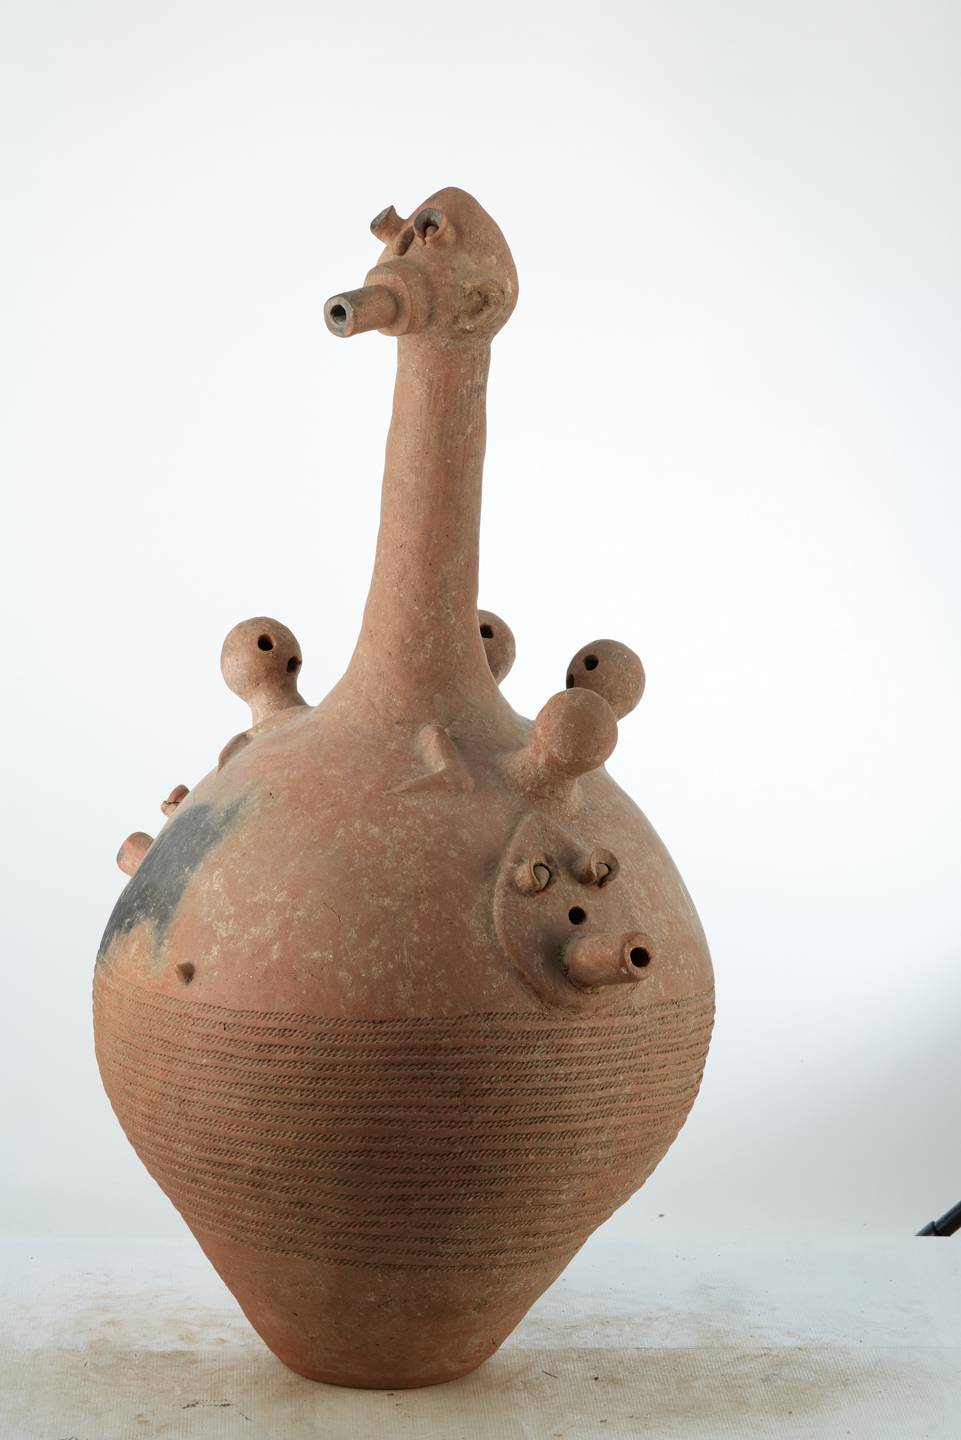 Dogon.(vase), d`afrique : Mali, statuette Dogon.(vase), masque ancien africain Dogon.(vase), art du Mali - Art Africain, collection privées Belgique. Statue africaine de la tribu des Dogon.(vase), provenant du Mali, 1973 Vase BANKONI de cérémonie funéraire en terre cuite .Le vase est ouvert par la base.Il a une H.de 118cm.et un diam.de60cm.Il représente un corps avec un long cou plus la tête 45cm.  Sur le corps 4 petites boules représentant des têtes avec 3 trous  sybolisant  le nez et  deux yeux en plus  deux petits bras.Sous les petites têtes 3 visages plats avec 2 yeux ,un nez et une bouche allongée trouée. pour laisser passer la fumée.Les traits anthropomorphes accompagnaient les hommes dans les rites rythmant leur existance,le lien sacré entre le vivant et l